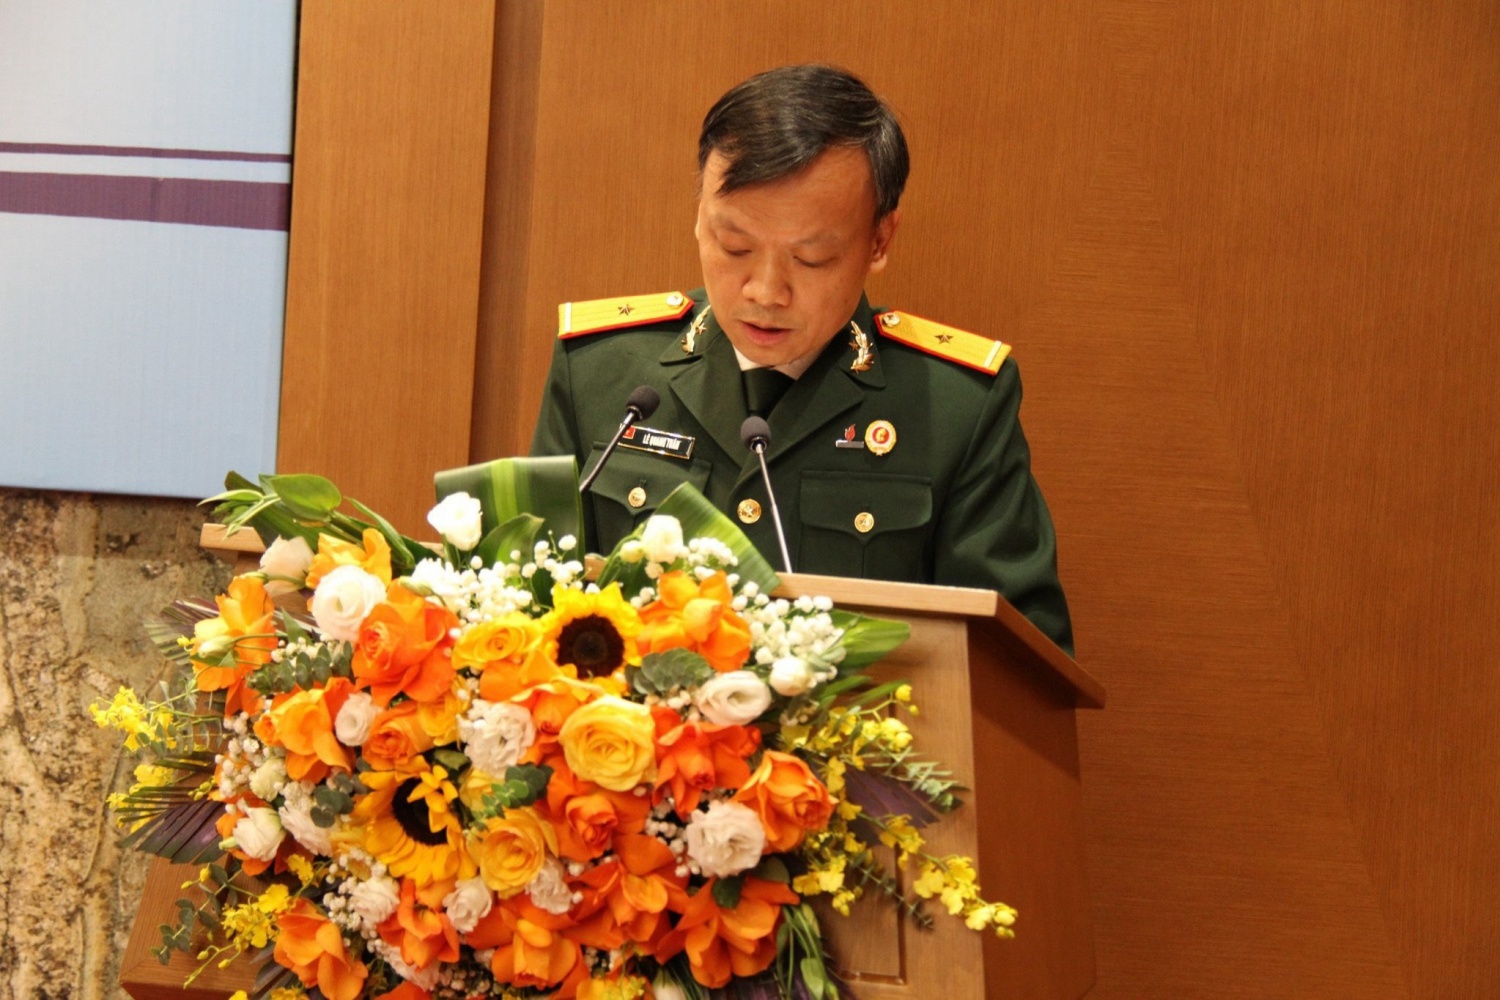 Hội CCB Tập đoàn: Phát huy phẩm chất Bộ đội Cụ Hồ, hoàn thành xuất sắc nhiệm vụ năm 2023